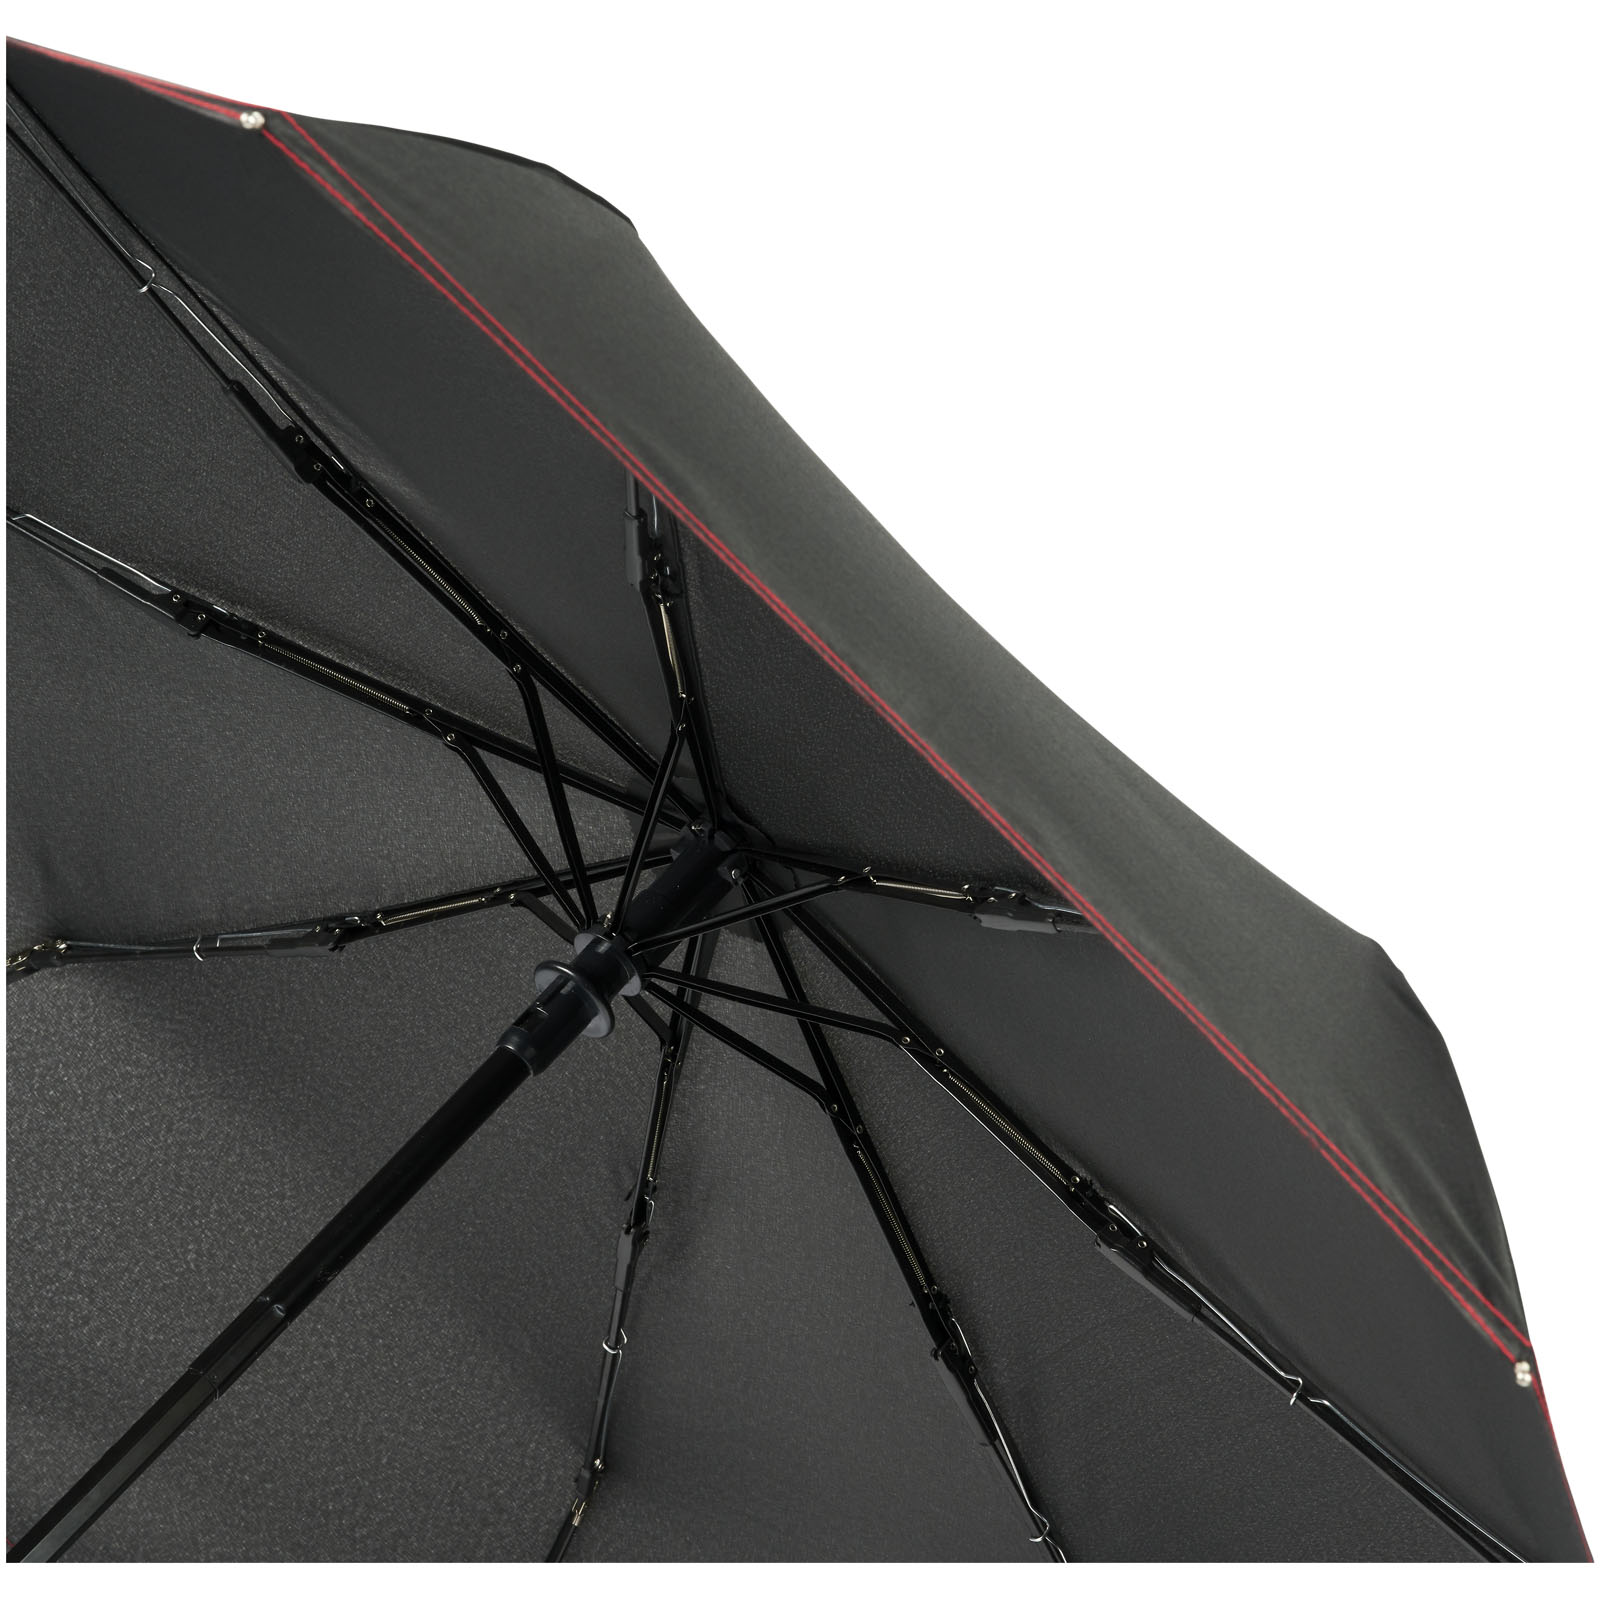 Parapluies pliables publicitaires - Parapluie pliable à ouverture/fermeture automatique 21